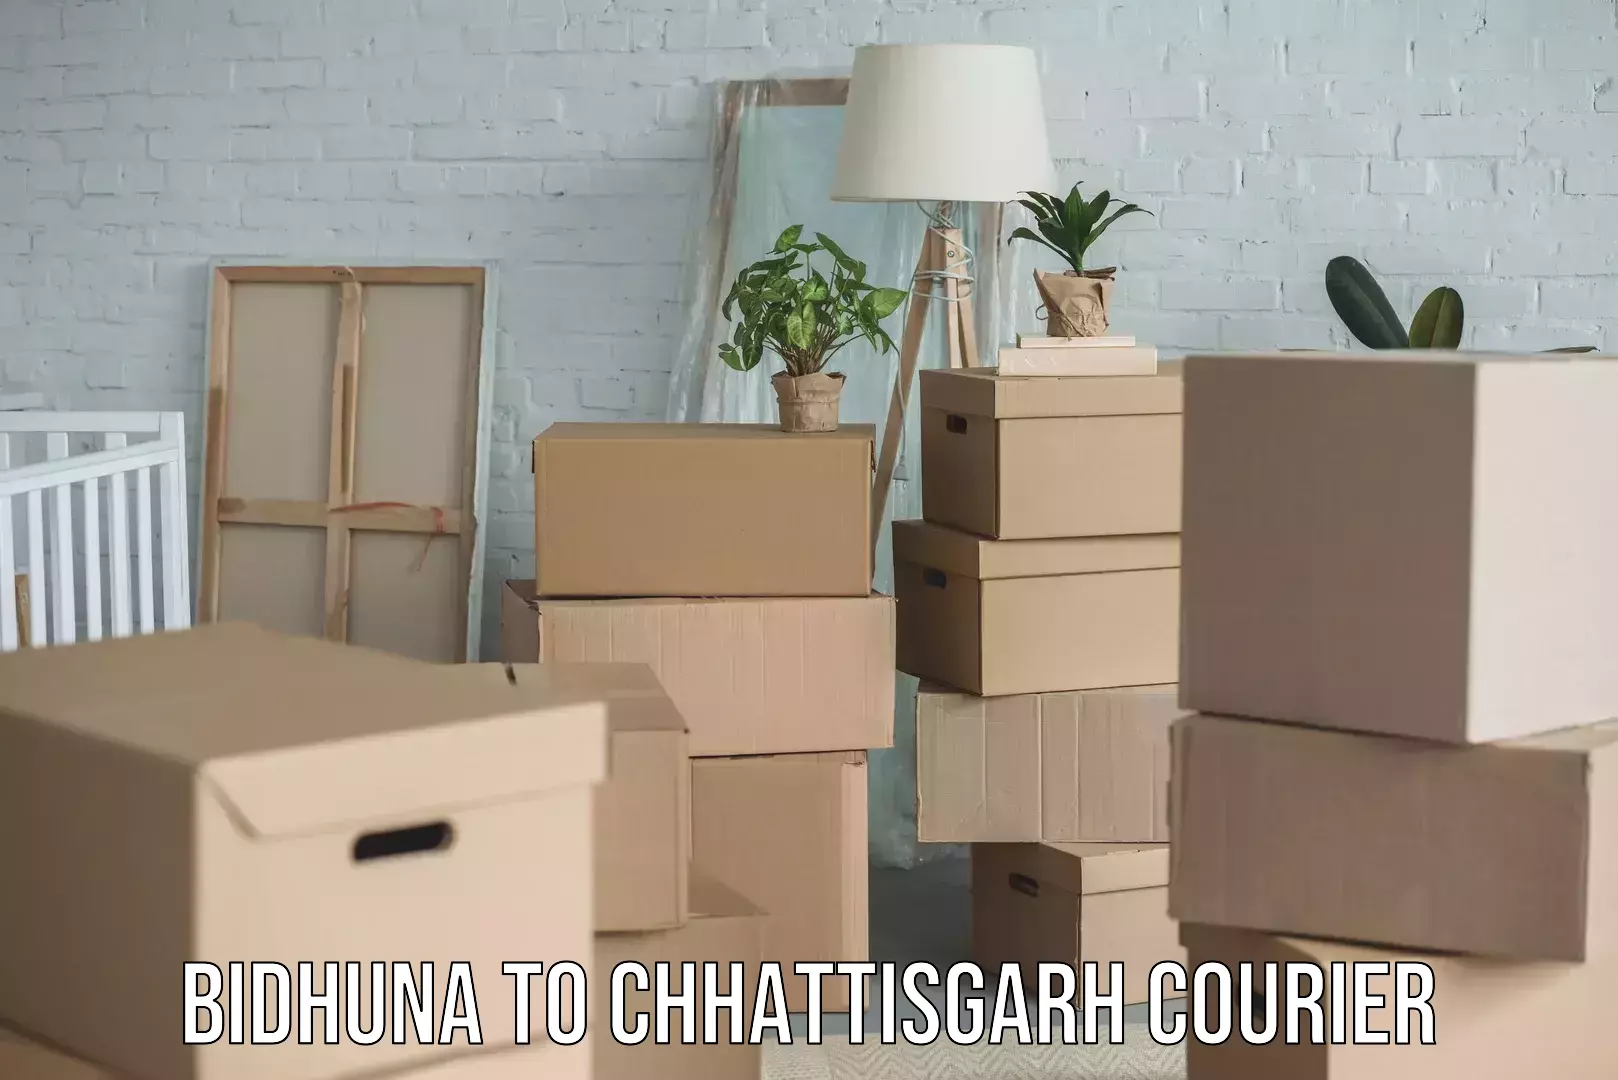 Speedy delivery service Bidhuna to Chhattisgarh